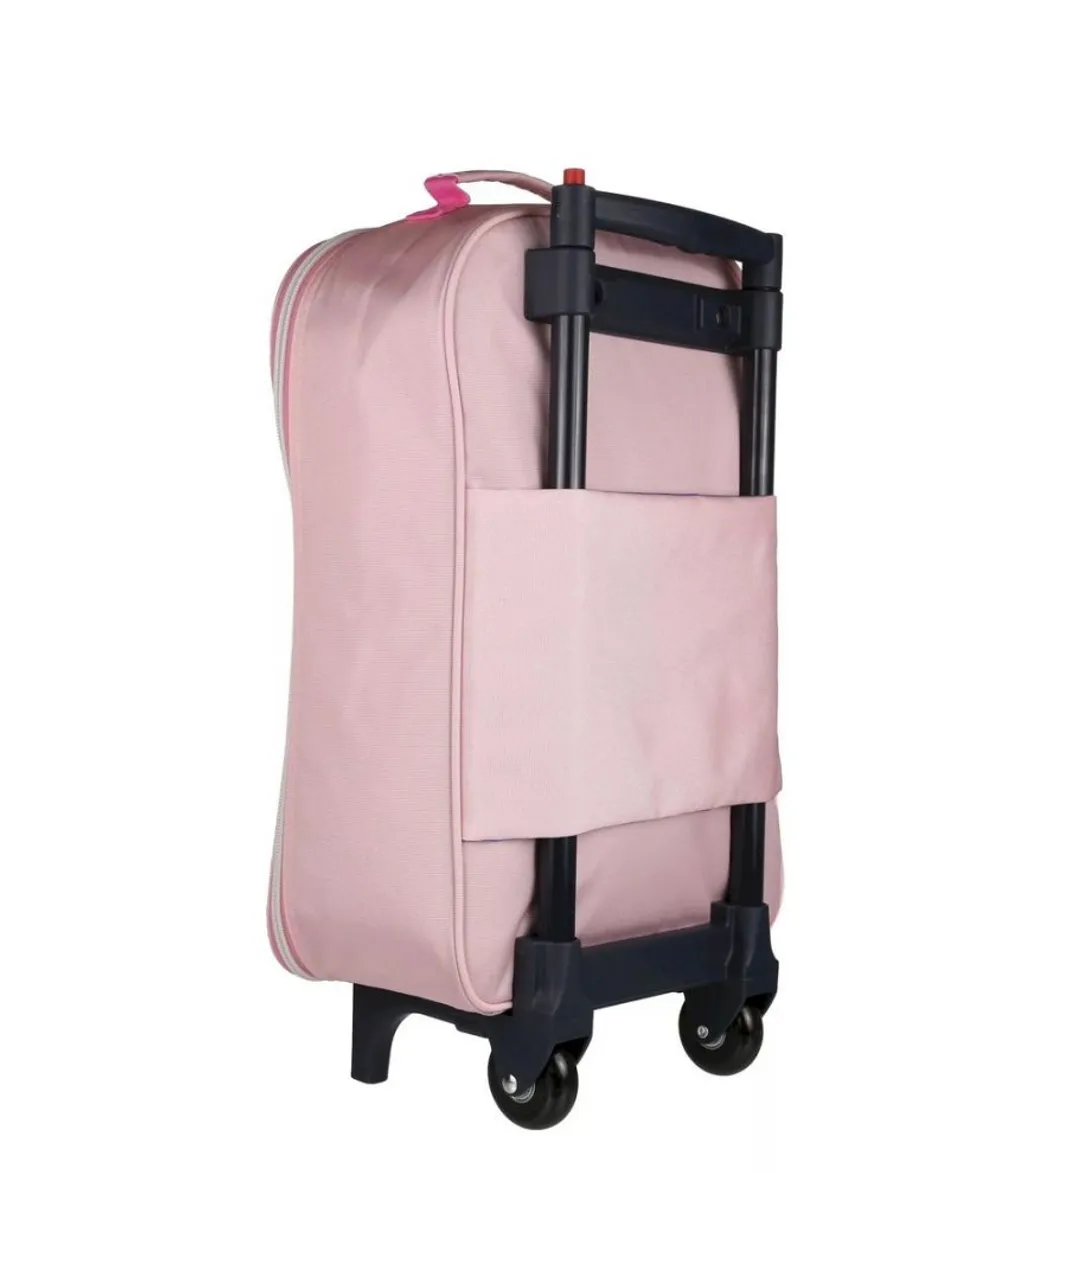 Regatta Childrens Unisex Childrens/Kids Peppa Pig 2 Wheeled Suitcase (Pink Mist) - One Size